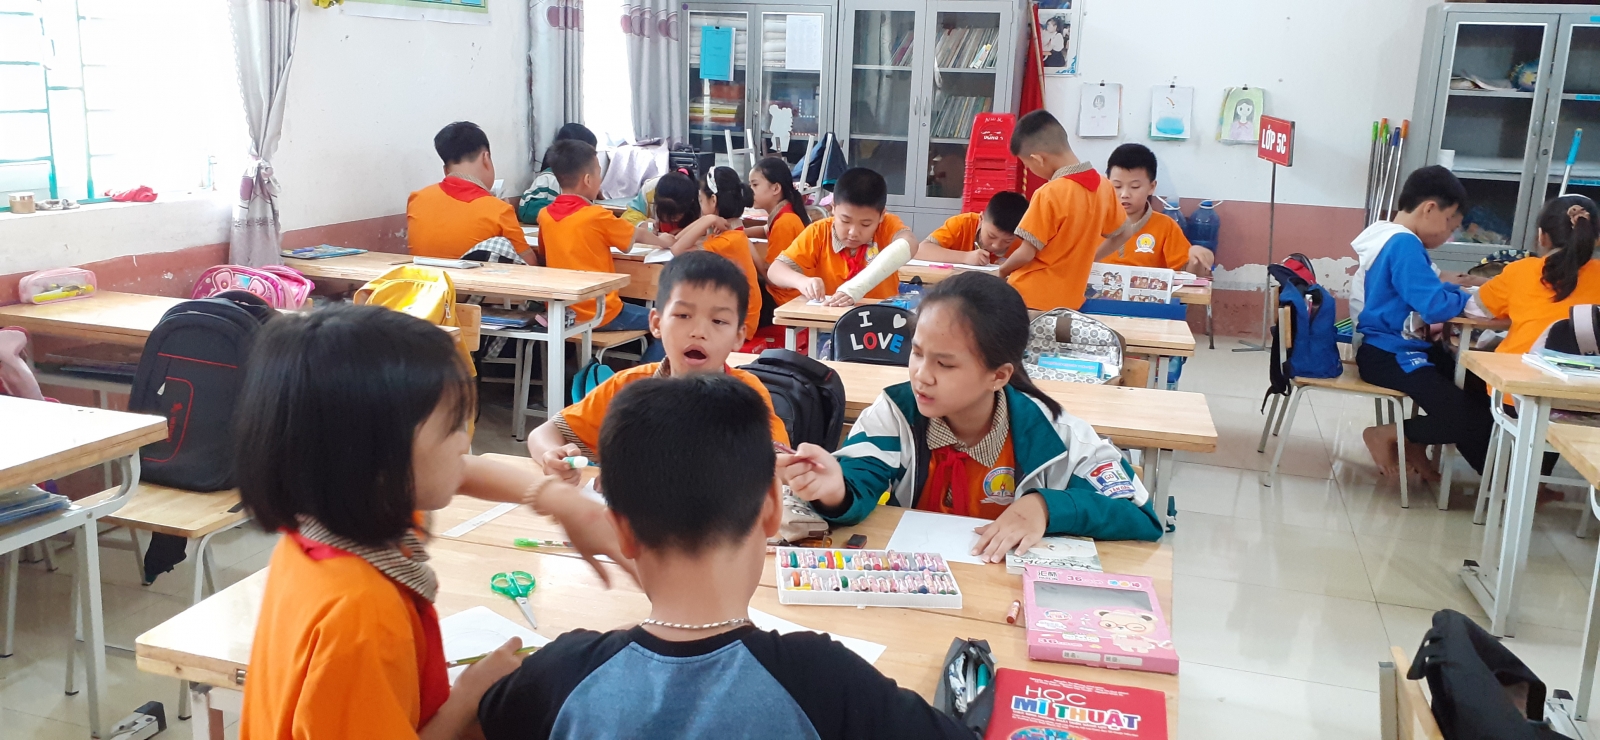 Bắc Giang: Triển lãm trưng bày tranh thiếu nhi “Sắc màu tuổi thơ” năm 2020 - Ảnh minh hoạ 2